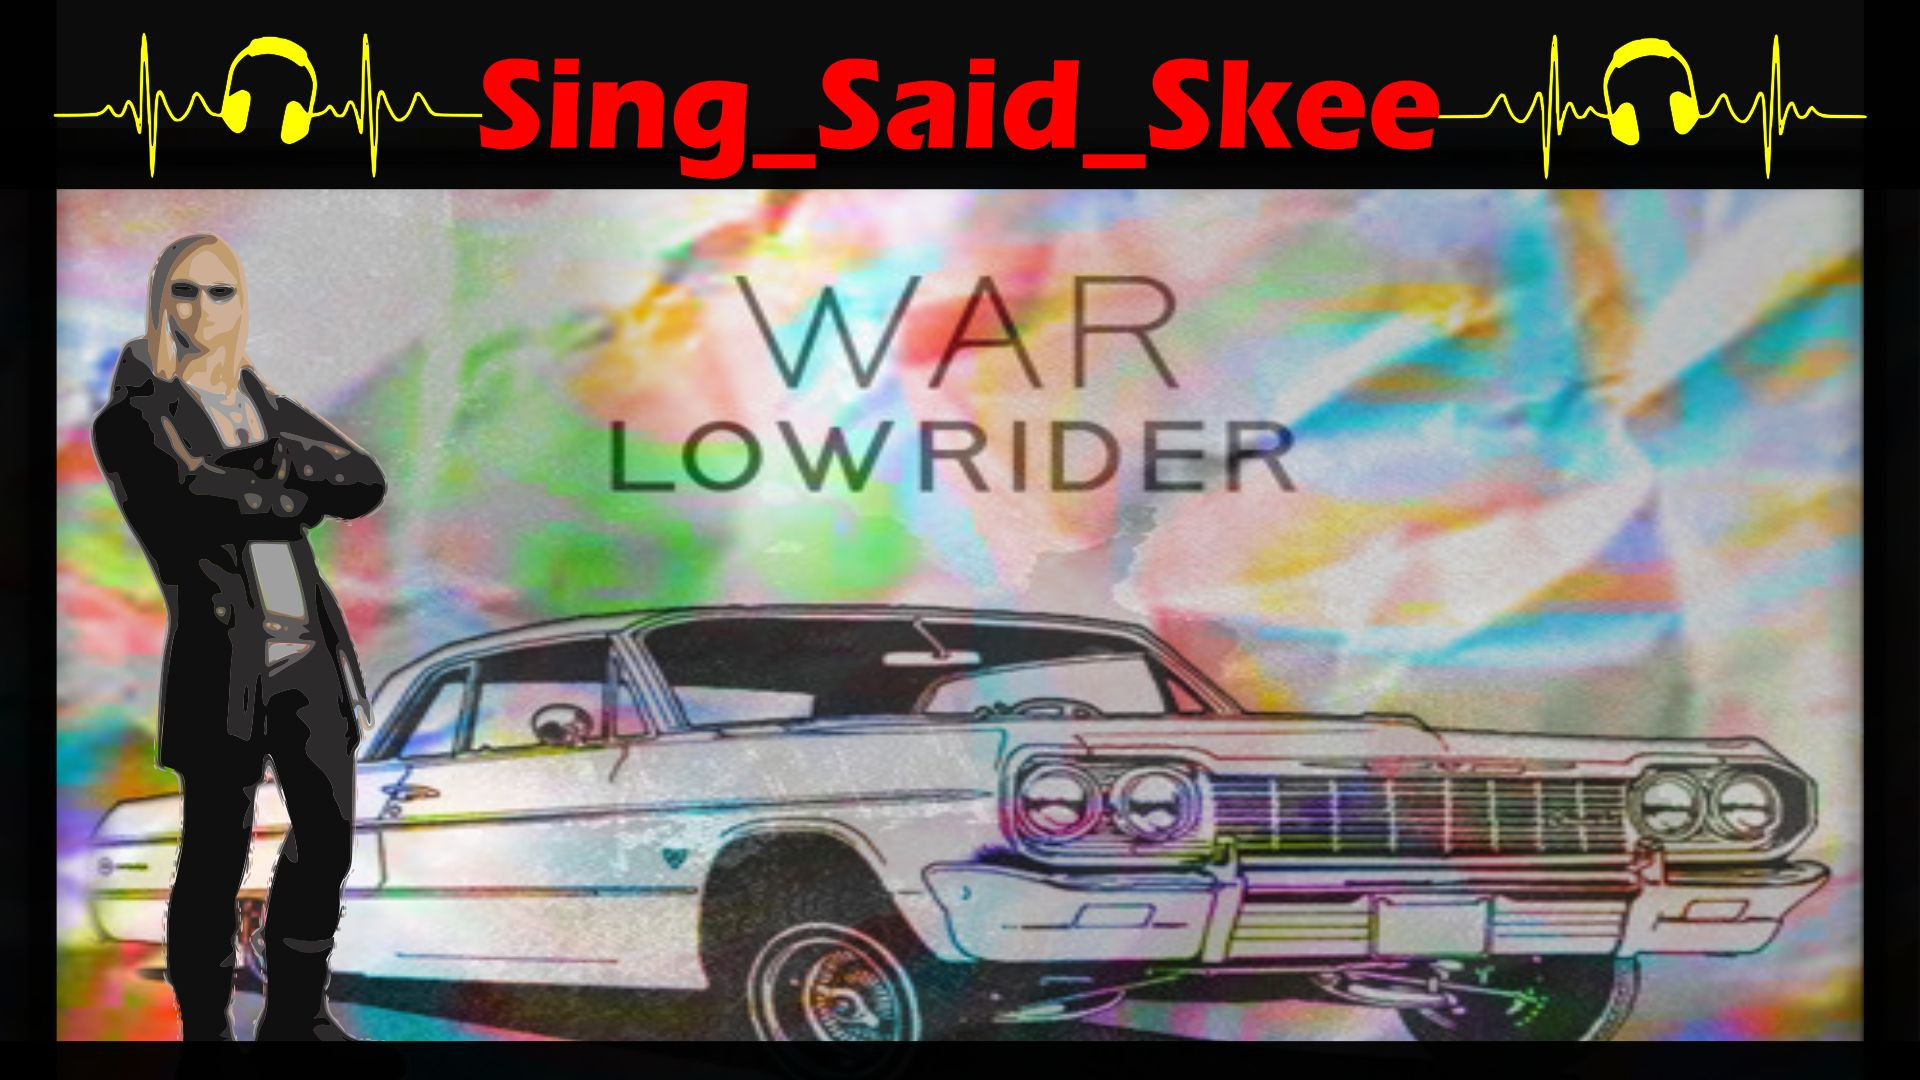 Low Rider - War - Sing_Said_Skee